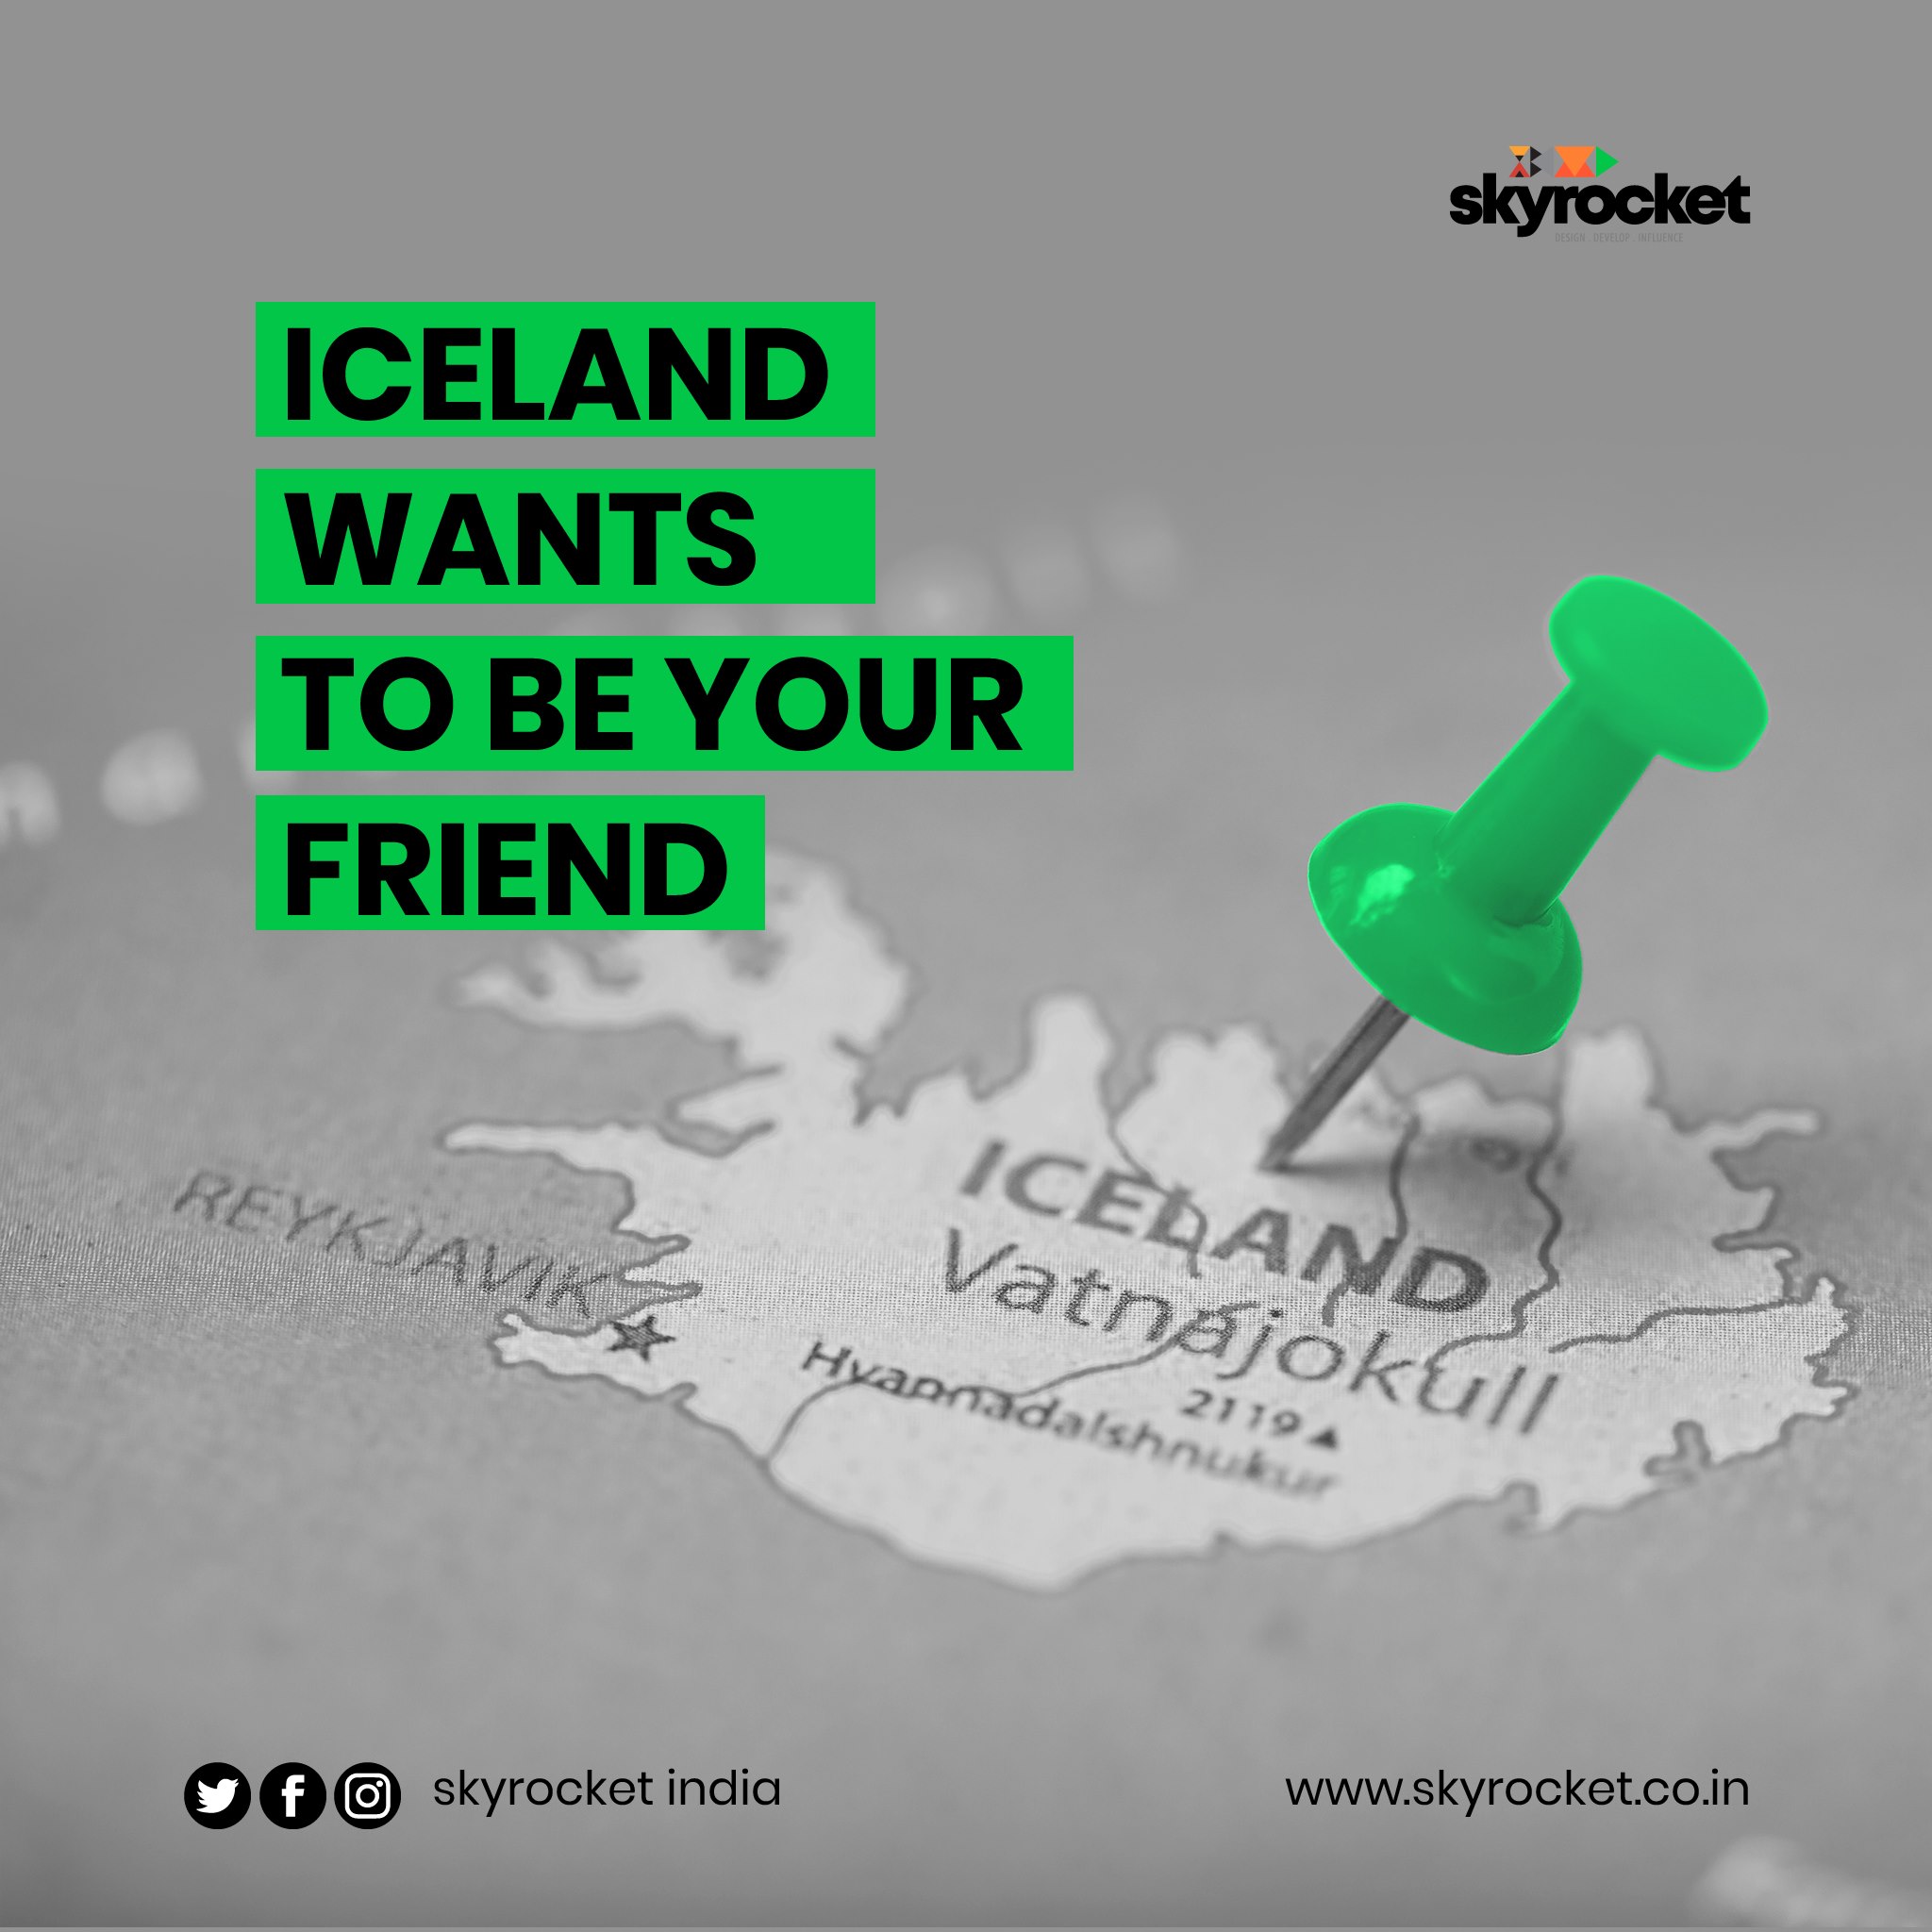 How Takk Takk made Iceland go viral?